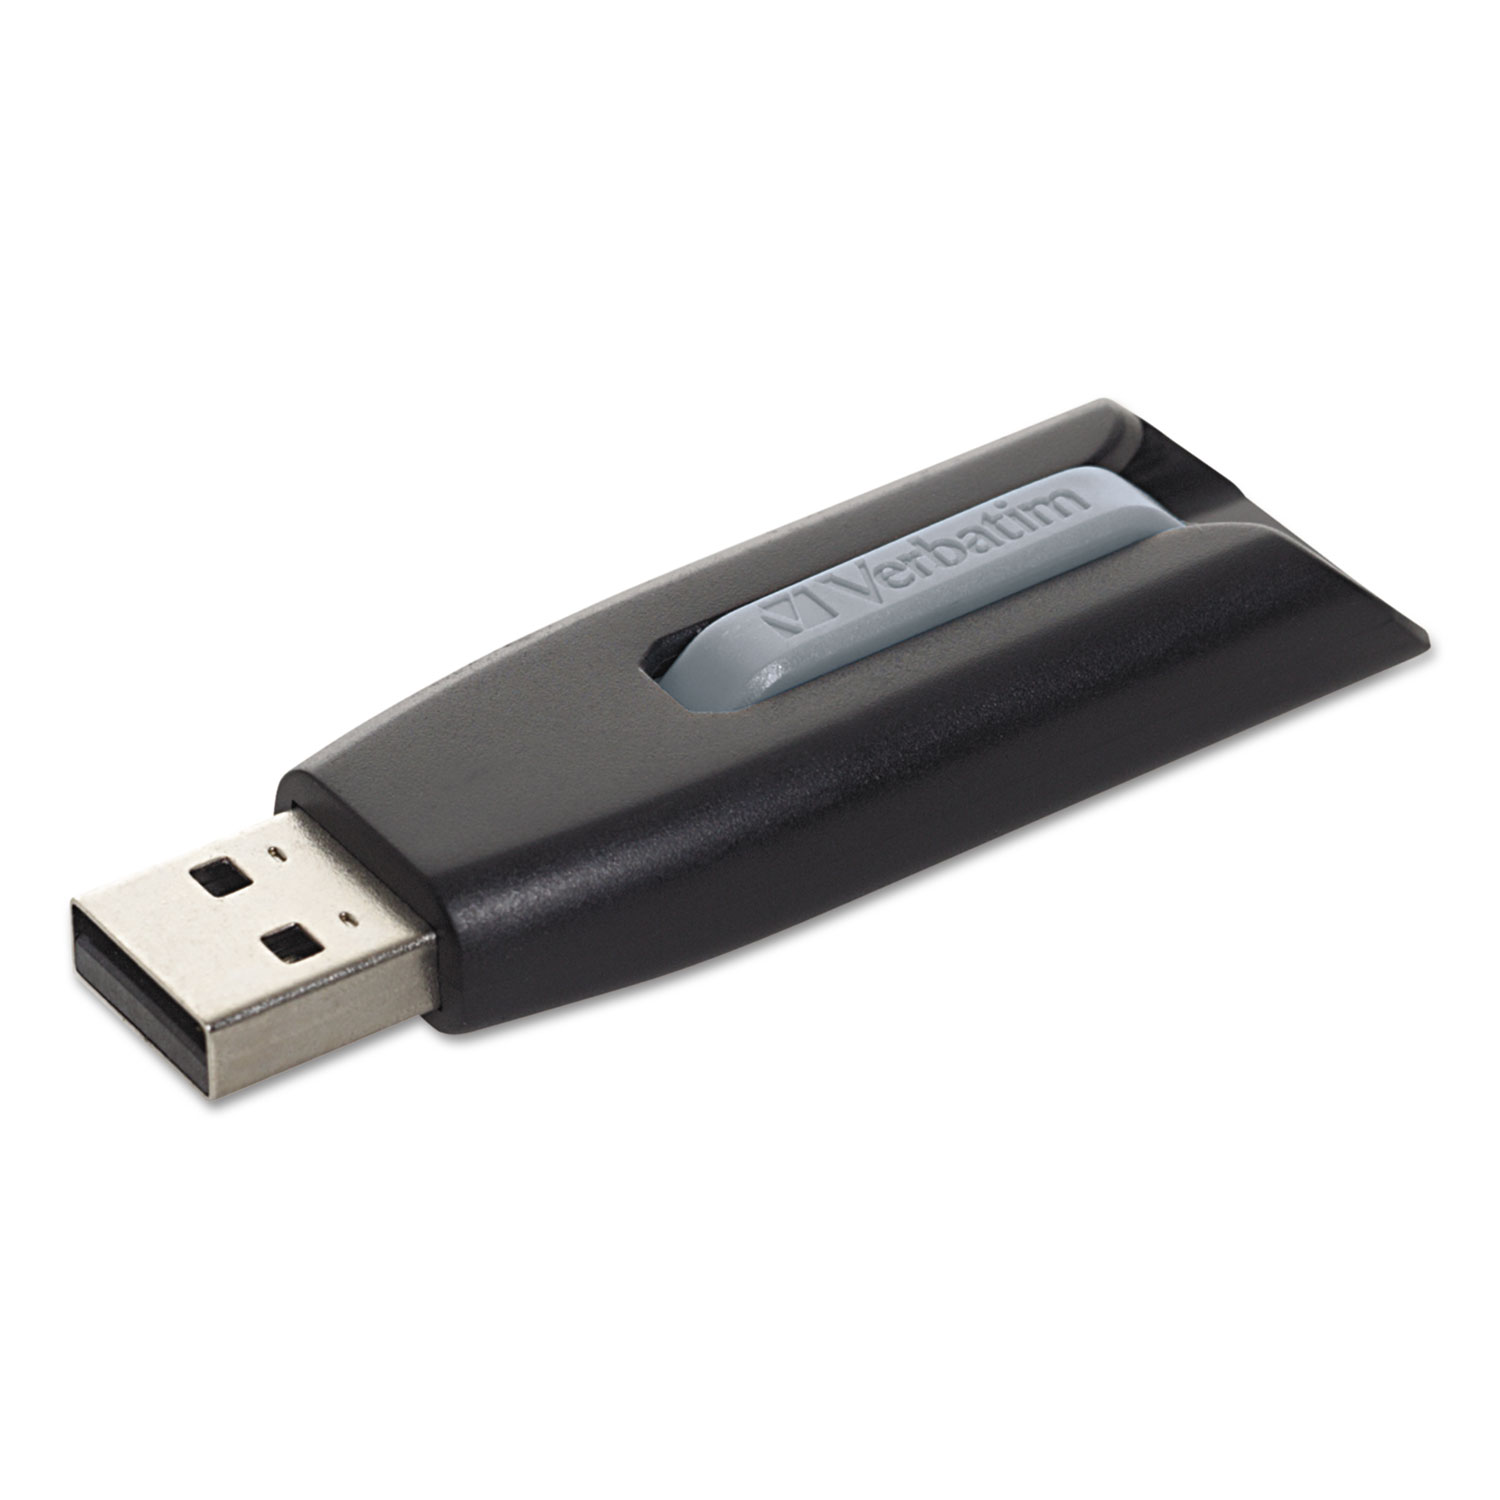  Verbatim 49172 Store 'n' Go V3 USB 3.0 Drive, 16 GB, Black/Gray (VER49172) 